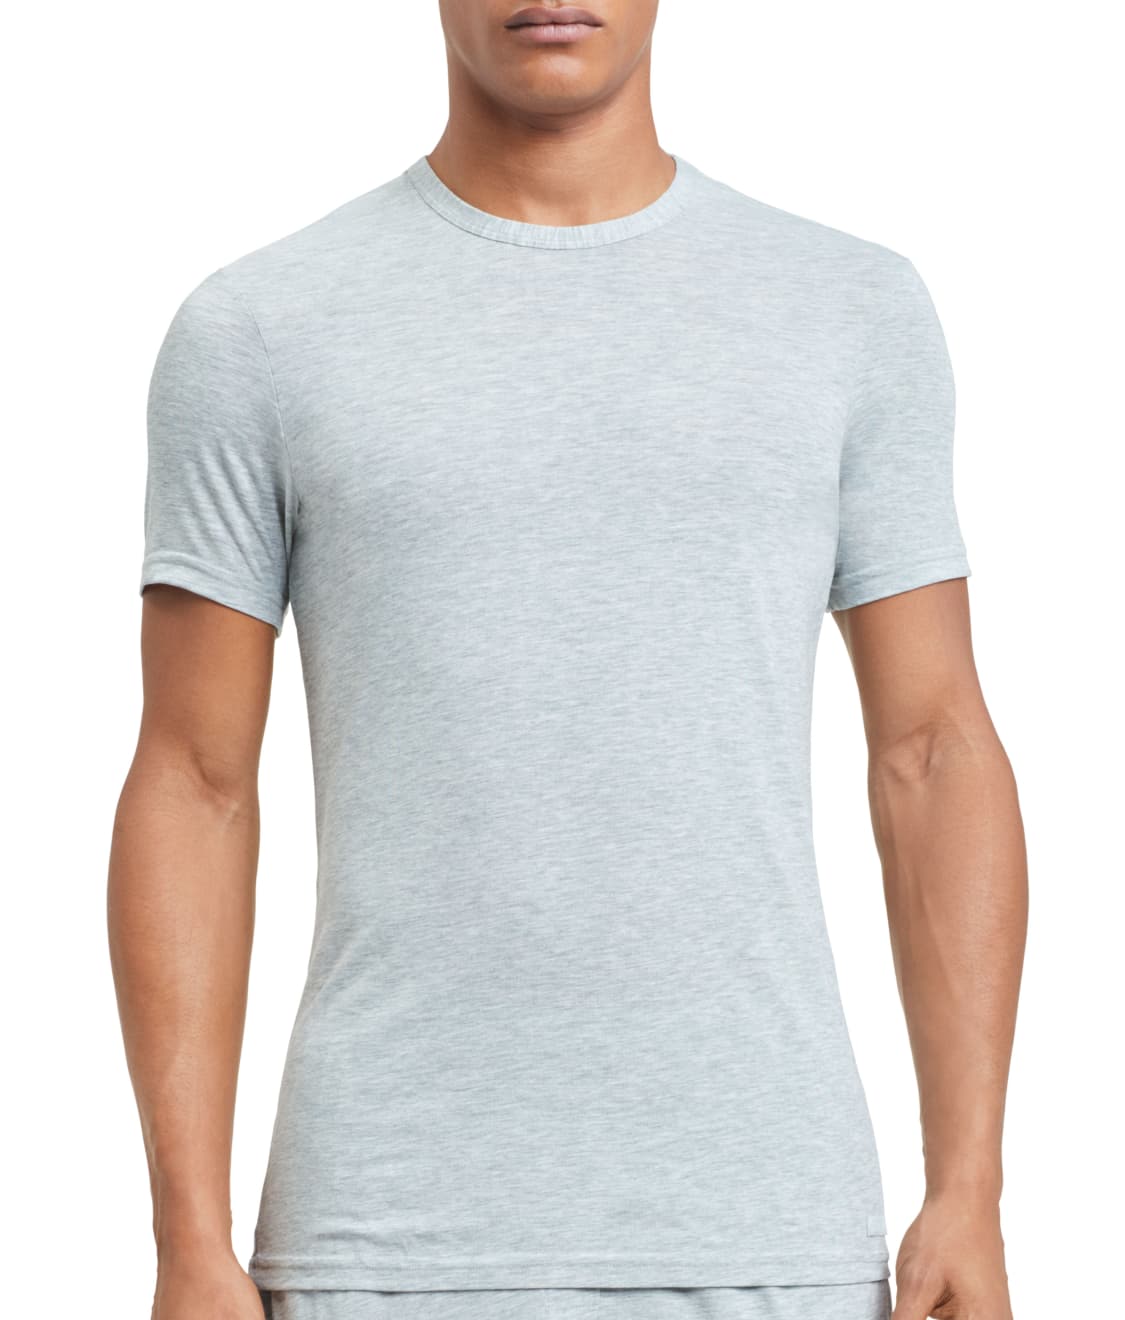 Calvin Klein Ultra-Soft Modal T-Shirt & Reviews | Bare Necessities ...